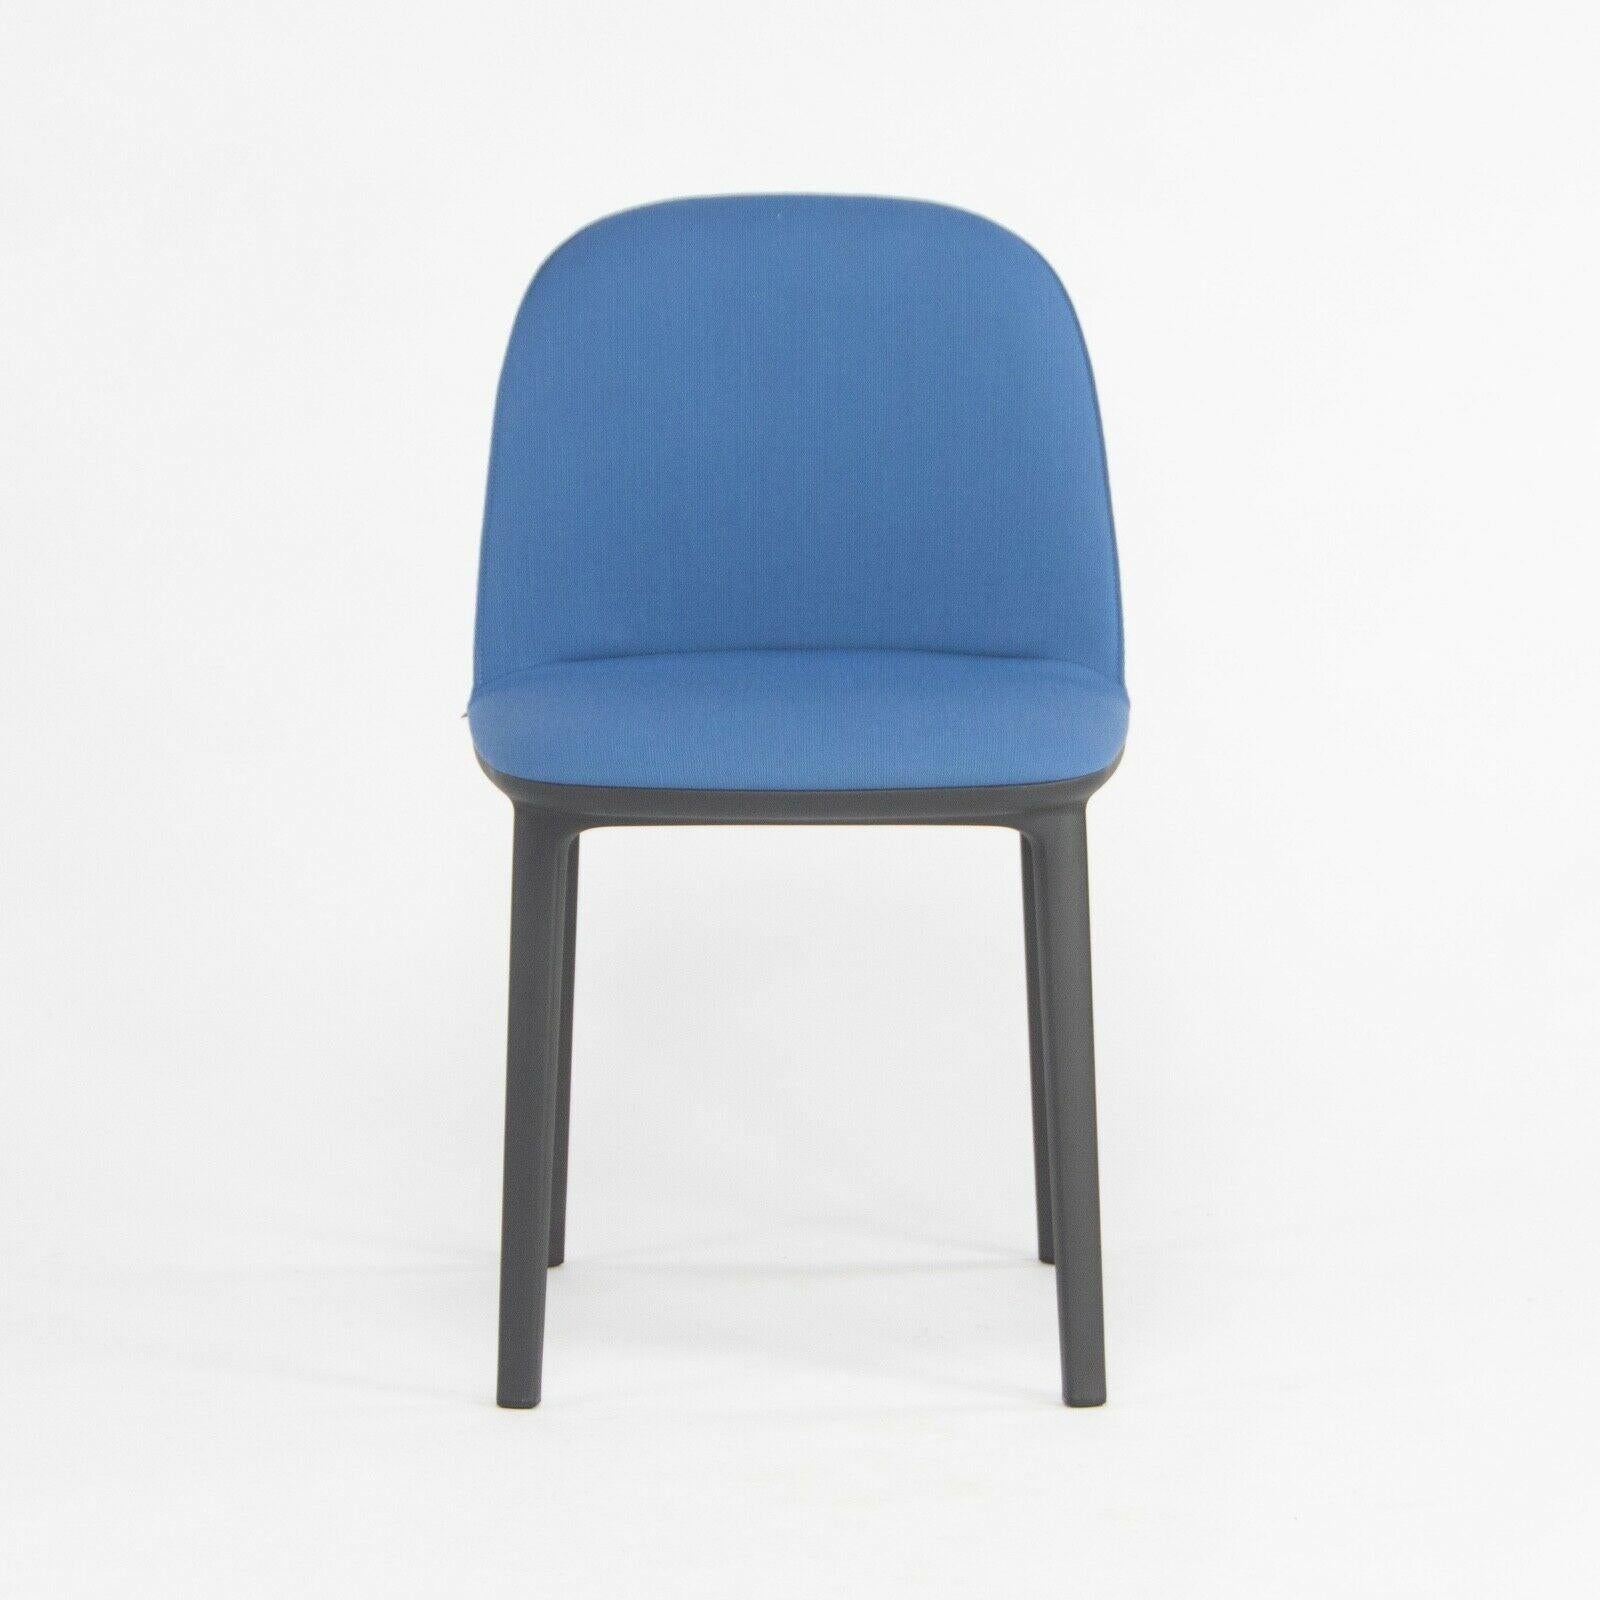 Zum Verkauf steht der Softshell Side Chair, entworfen von Ronan und Erwan Bouroullec und hergestellt von Vitra. Dieser Stuhl wurde mit einem schwarzen Kunststoffgestell und einem mit hellblauem Stoff bezogenen Sitz konstruiert. Der Zustand wird als